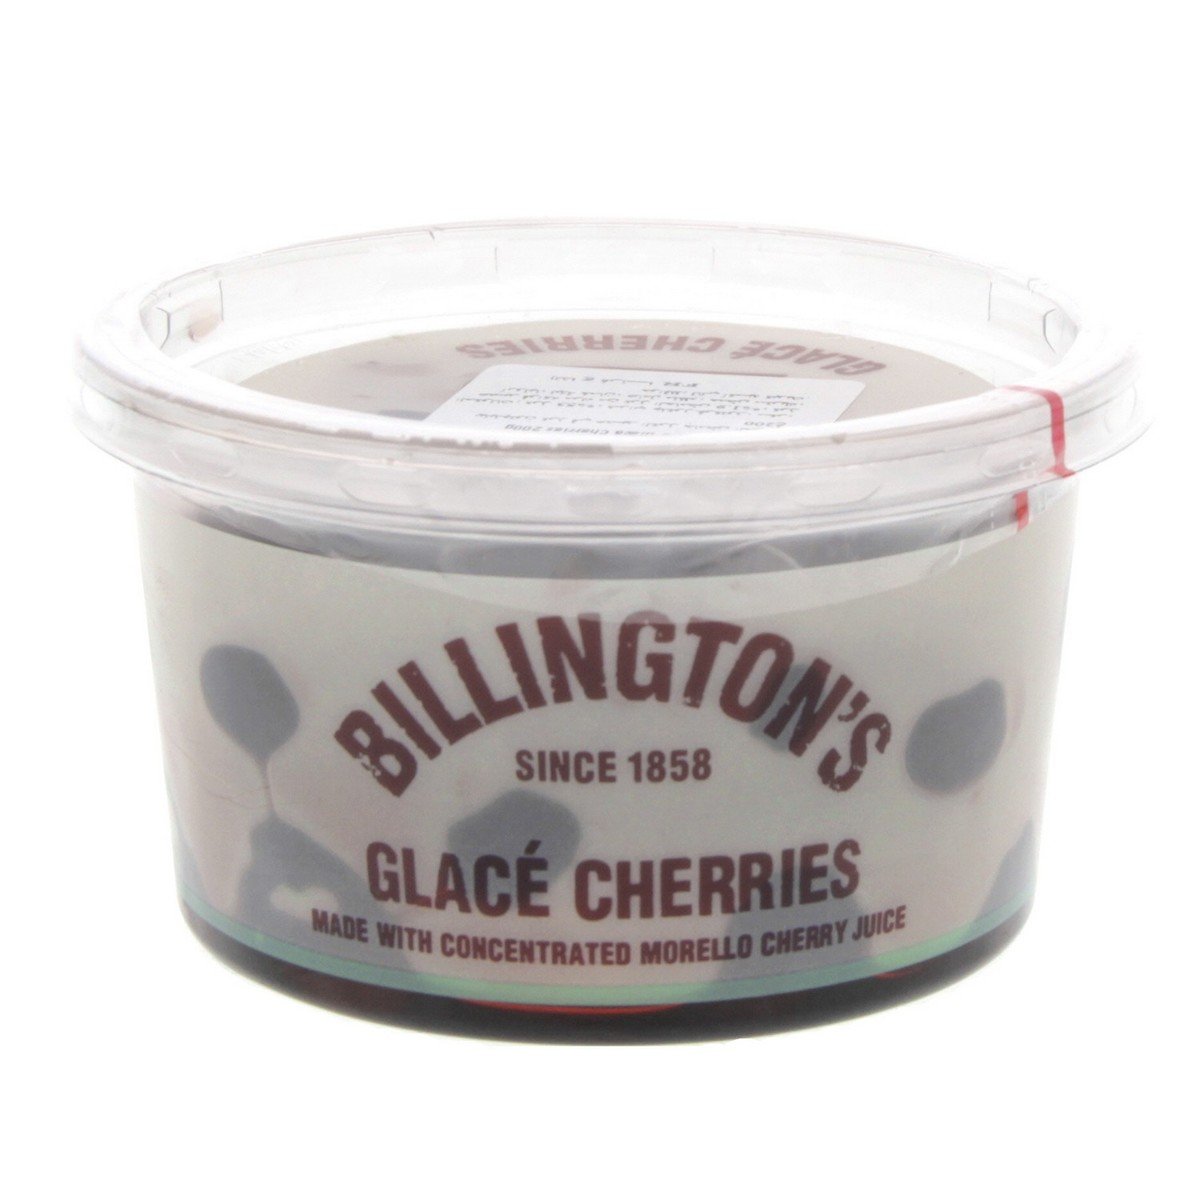 Billington's Glace Cherries 200 g